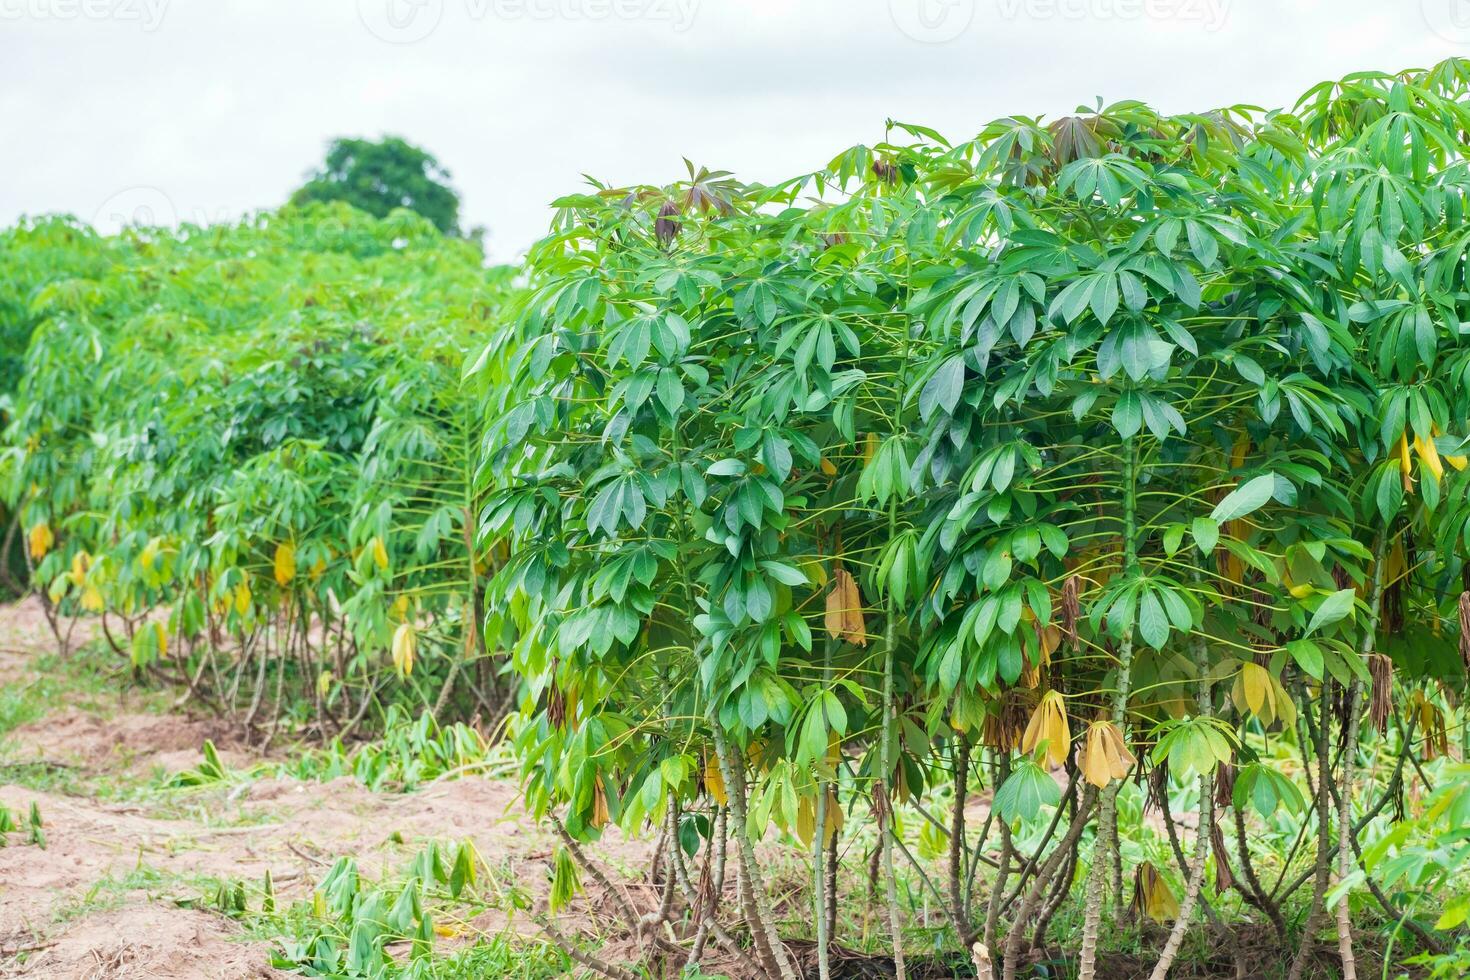 le manioc, dans les champs de manioc à la saison des pluies, a de la verdure et de la fraîcheur. montre la fertilité du sol, feuille verte de manioc photo